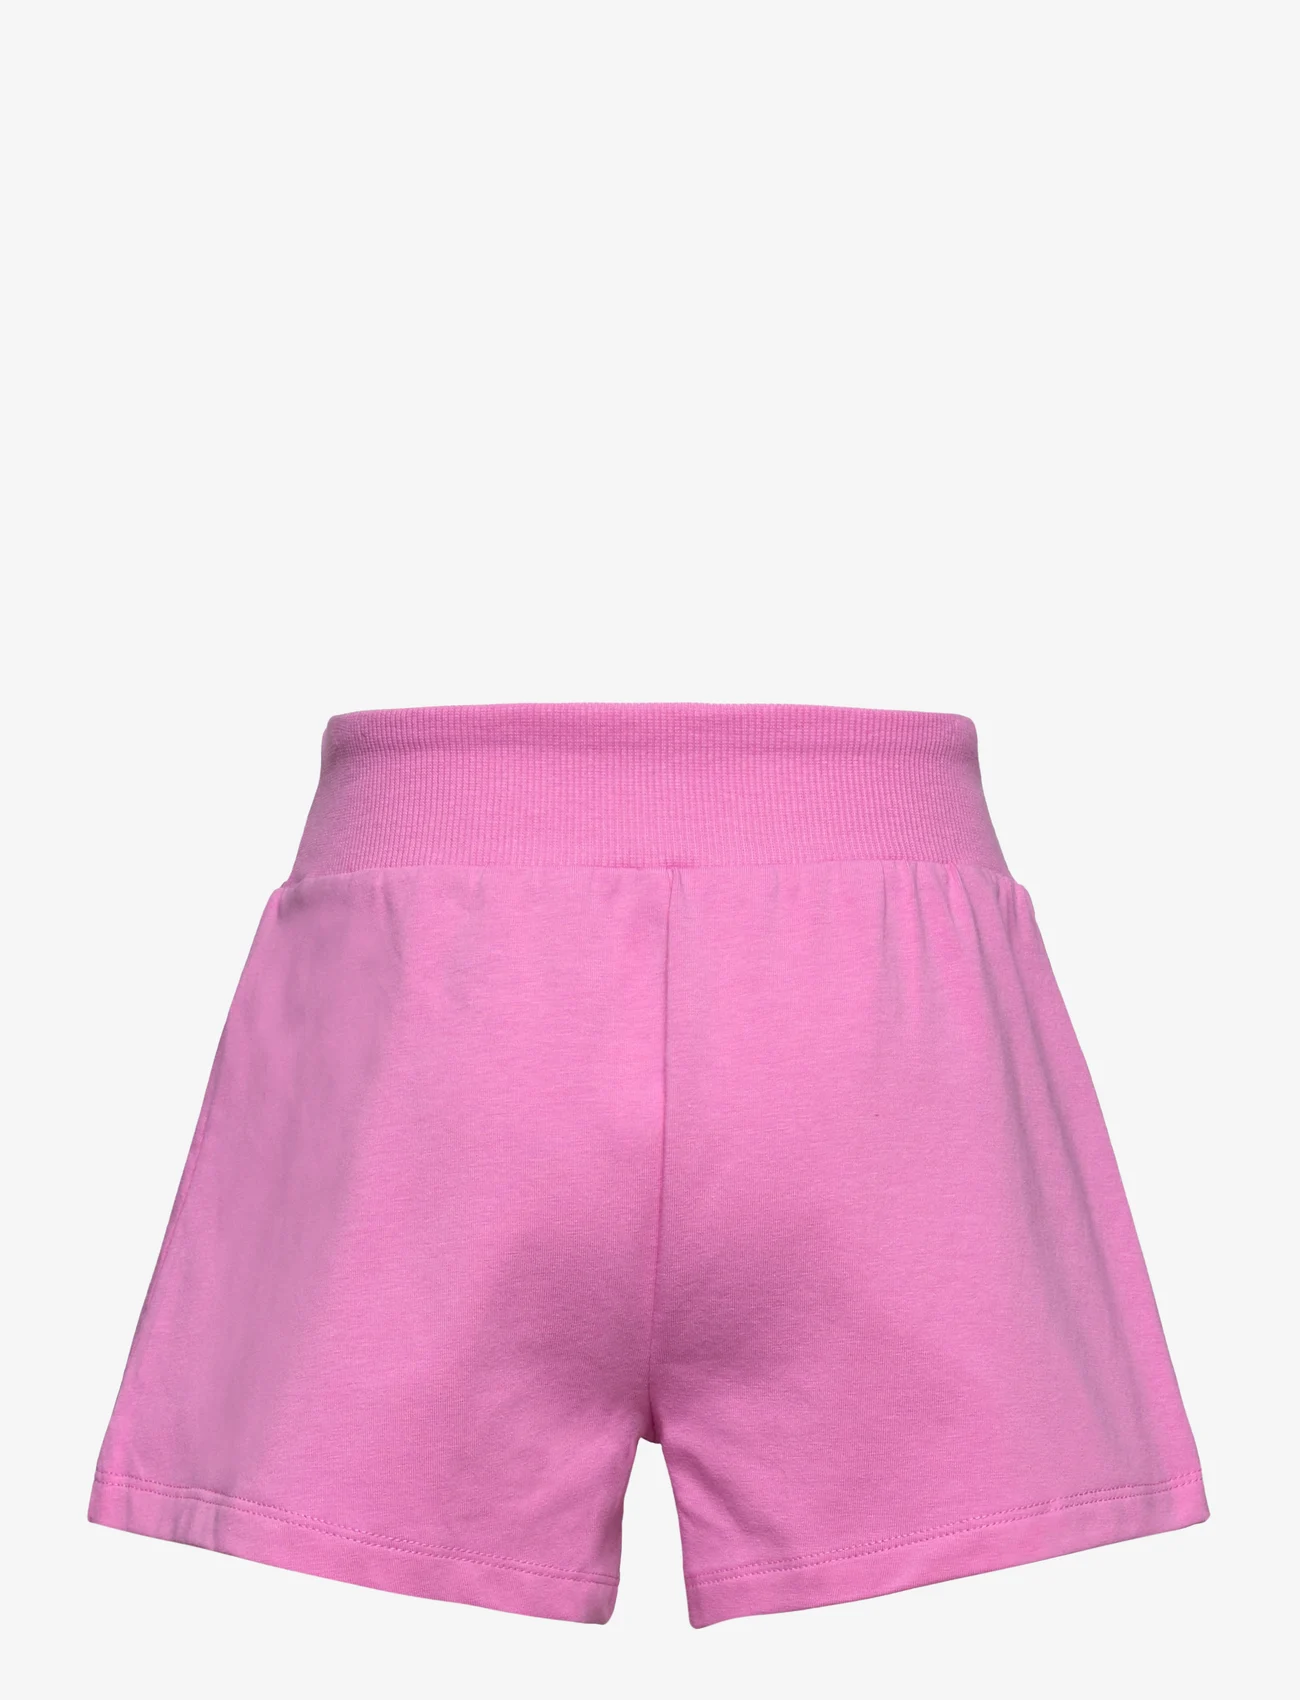 Nike - NKG JERSEY SHORT / NKG JERSEY SHORT - sweat shorts - playful pink - 1